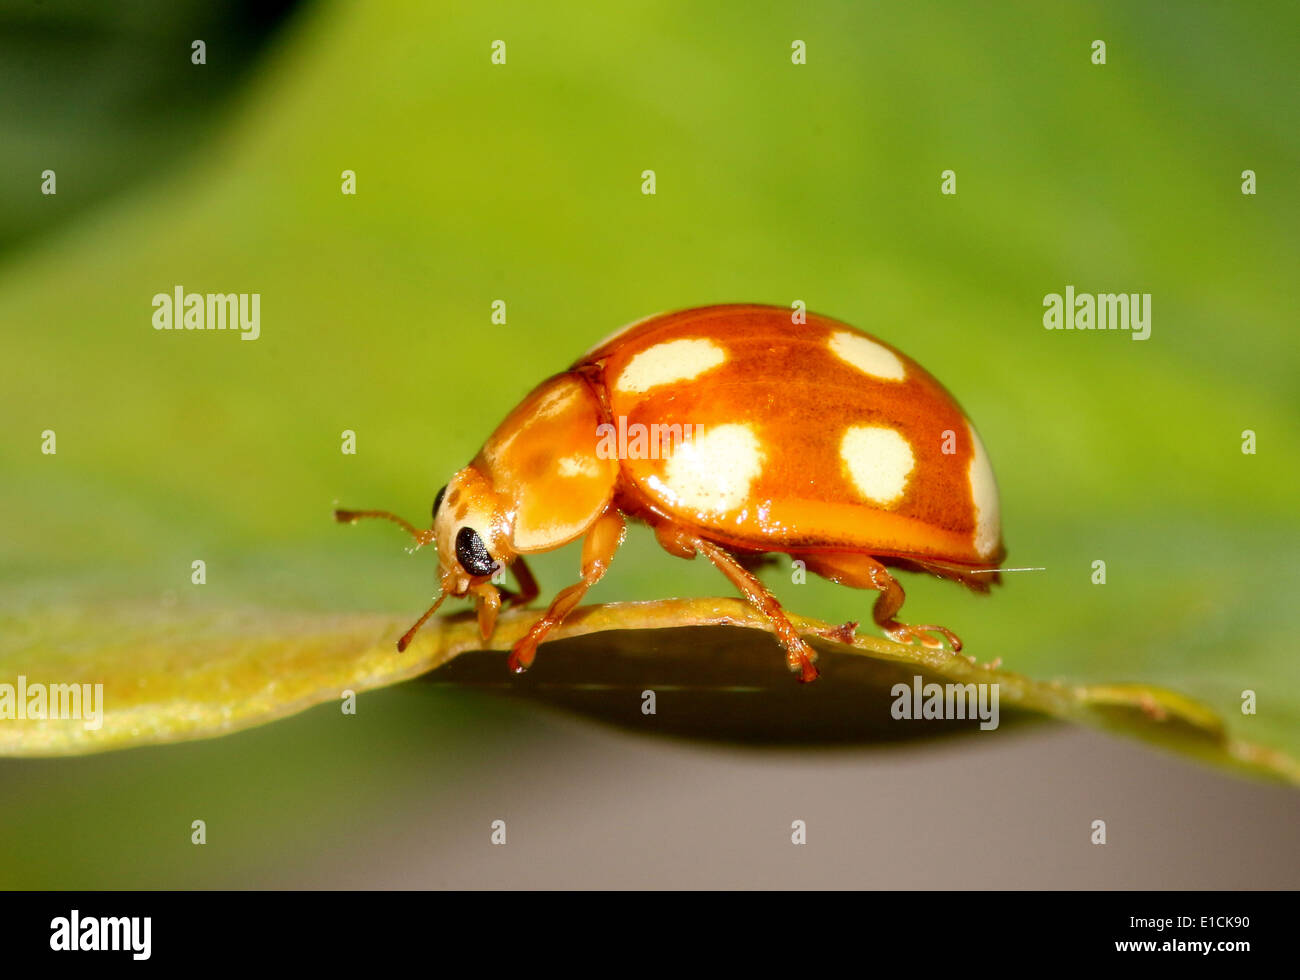 El minuto 10 puntos naranja mariquita / ladybug (Calvia decemguttata) Foto de stock